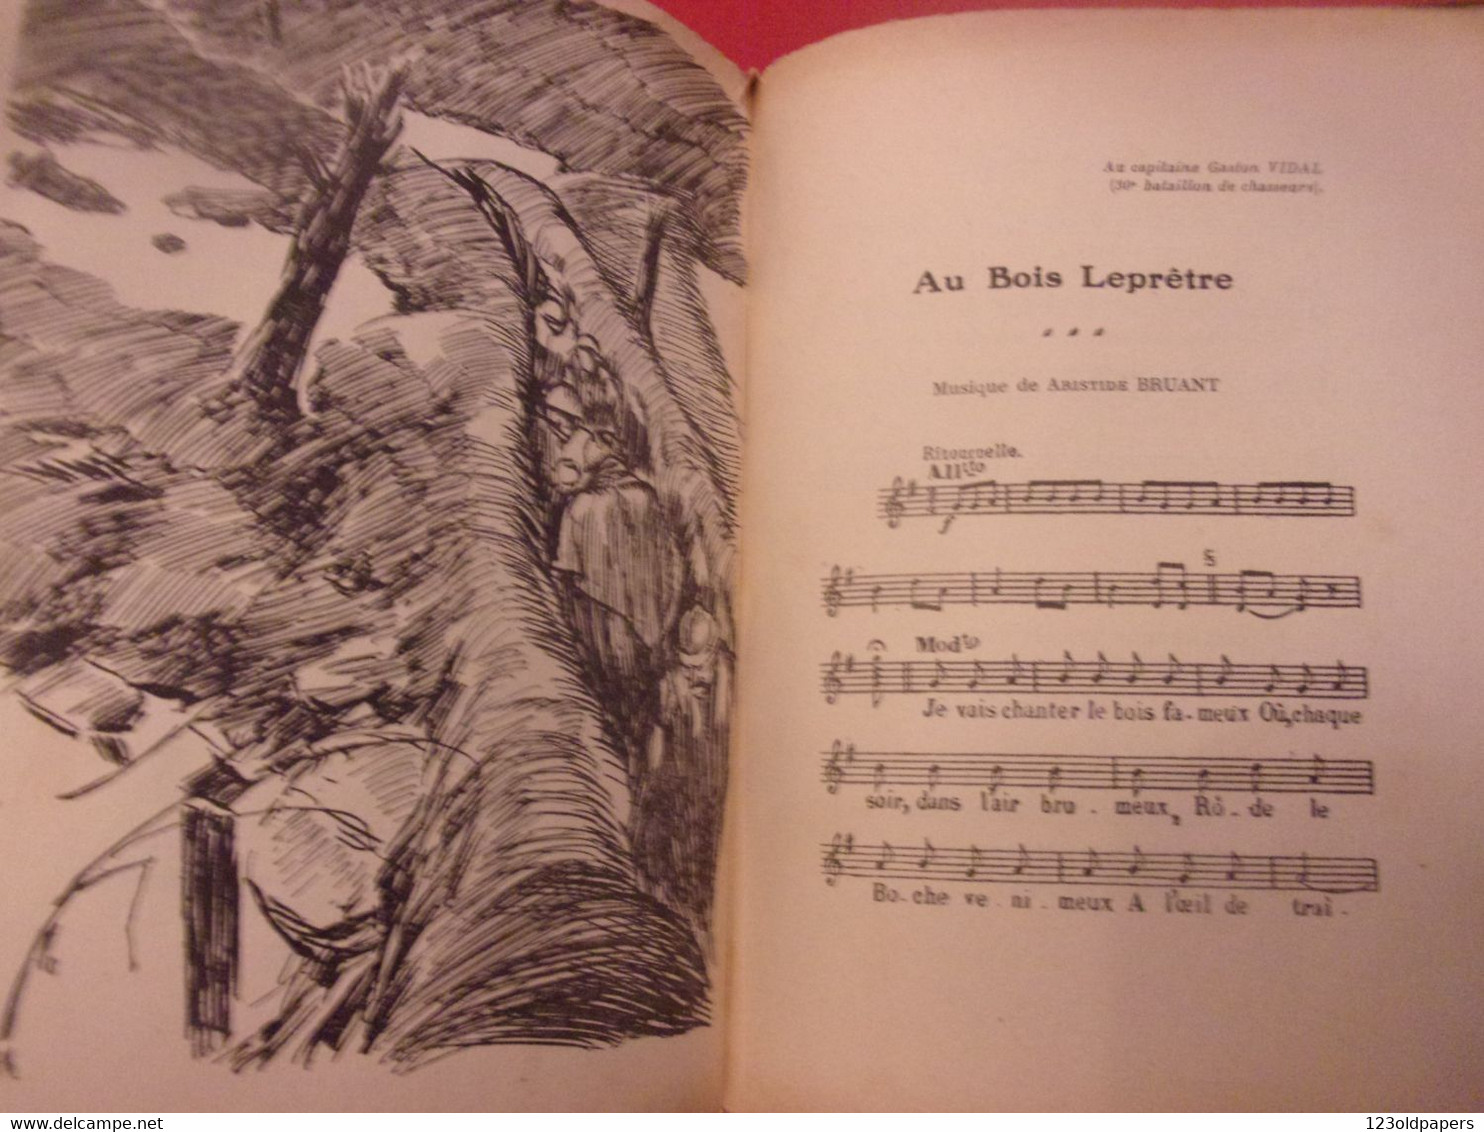 ♥️ La chanson des poilus Lucien Boyer ENVOI DE L AUTEUR  SALABERT 1918 ILLUSTRE ARNOUX  / DE VALERIO WWI